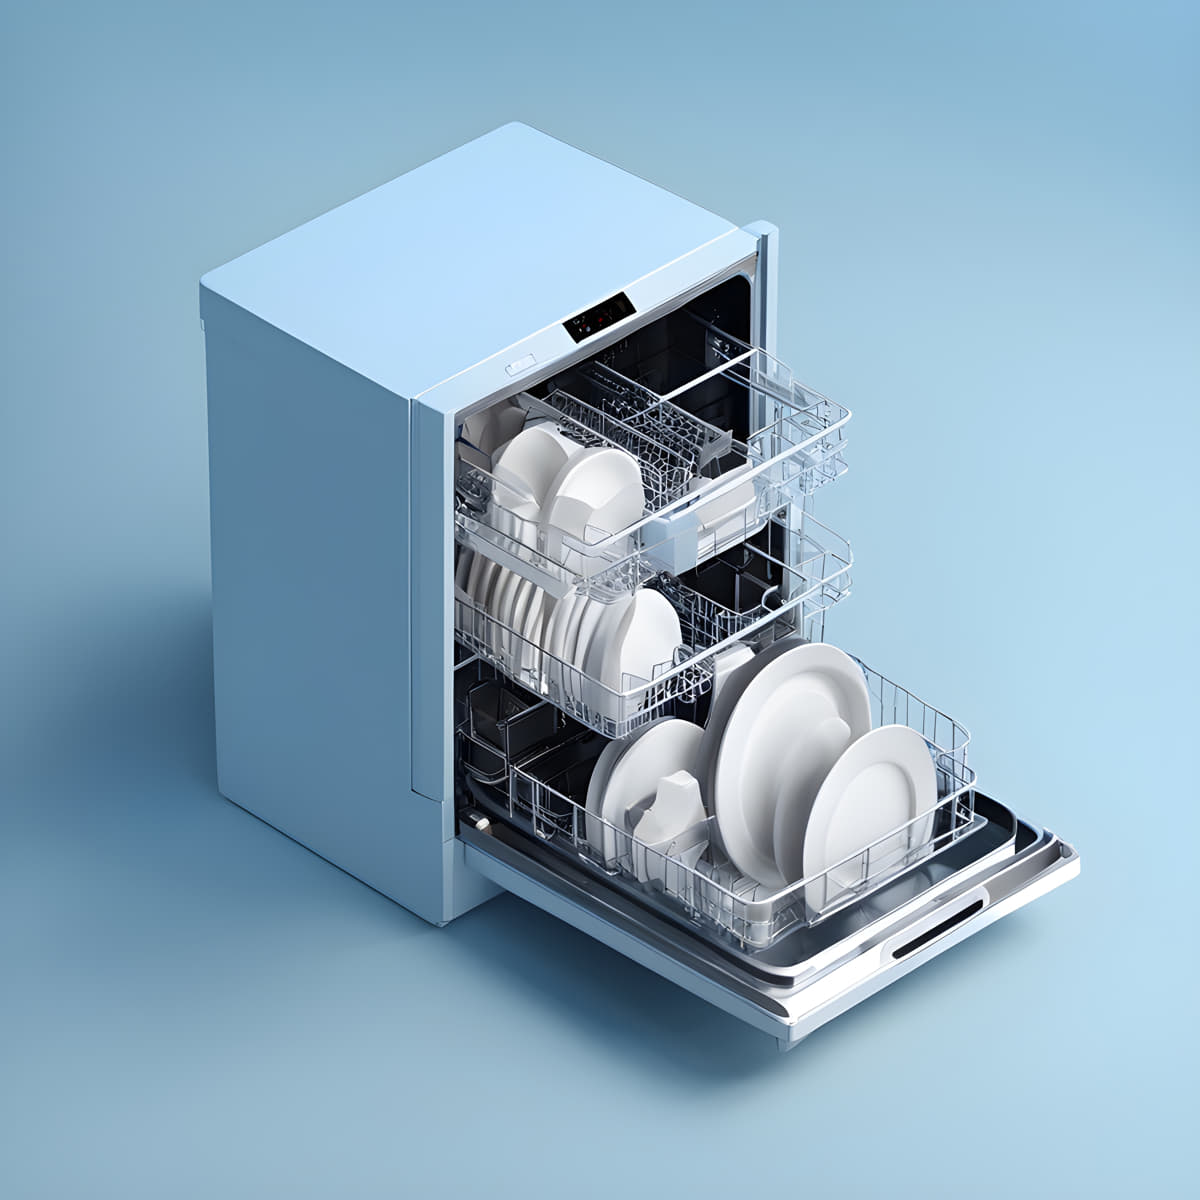 GE Profile dishwasher not starting